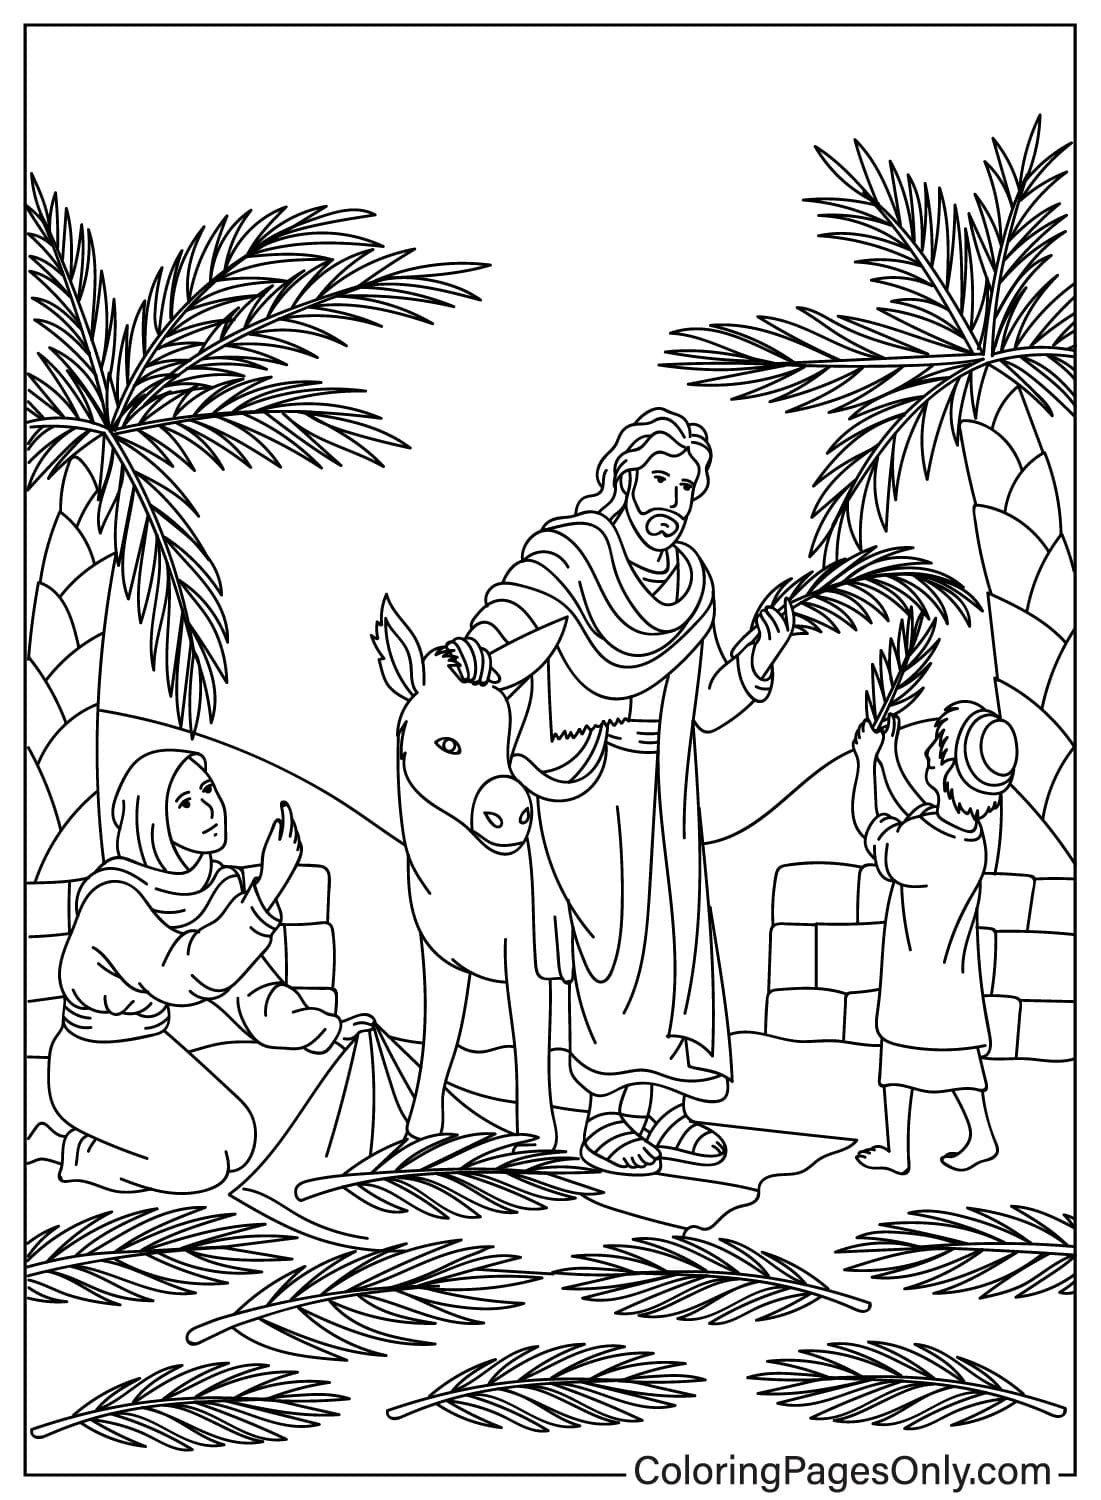 Раскраска с рисунком Вербного воскресенья из Вербного воскресенья